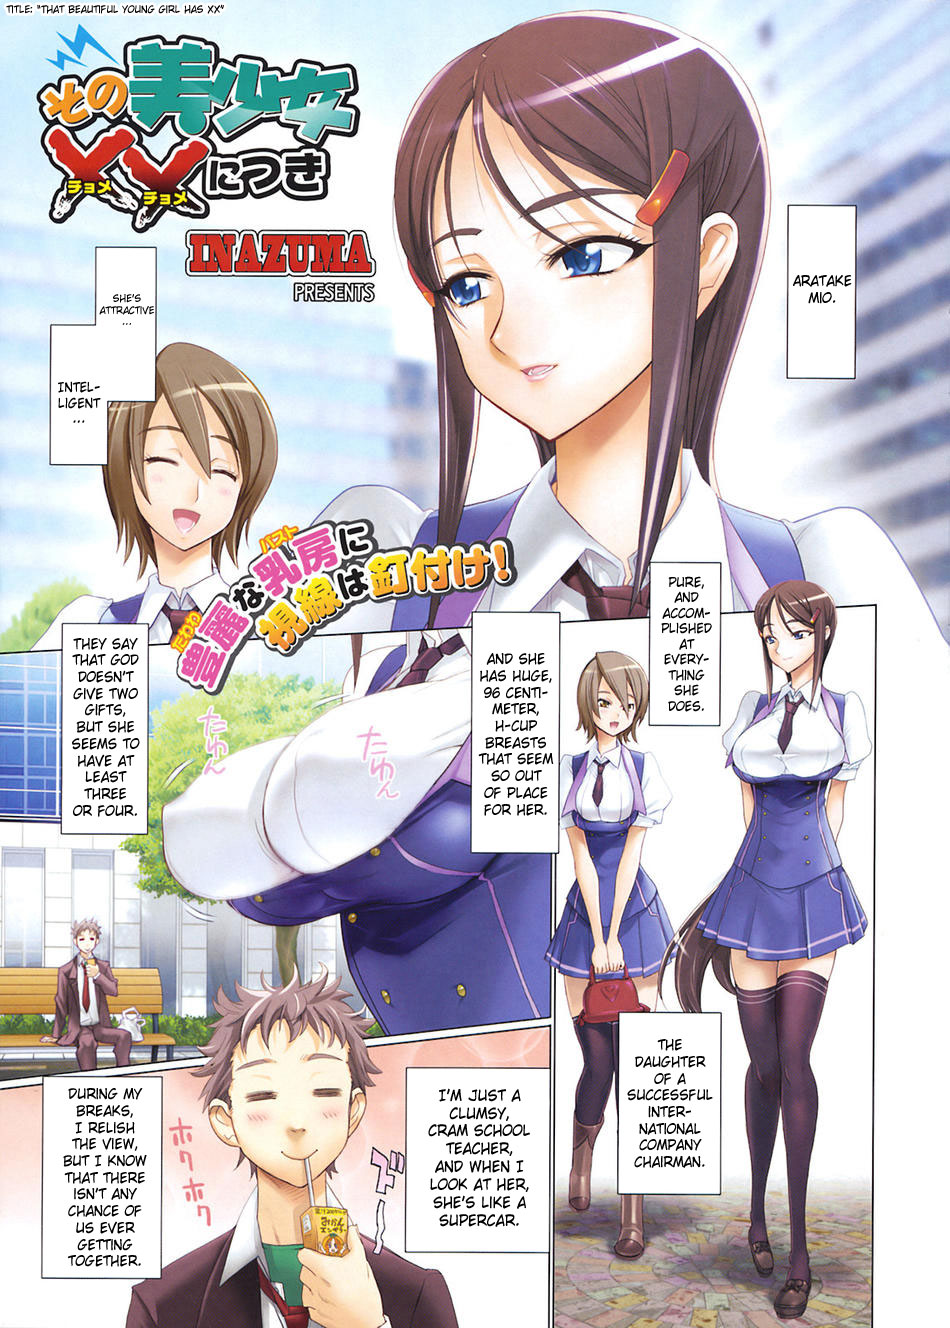 [Inazuma] Sono Bishoujo XX Nitsuki | That Beautiful Young Girl Has XX (COMIC HOTMiLK 2008-10) [English] [SaHa] page 2 full